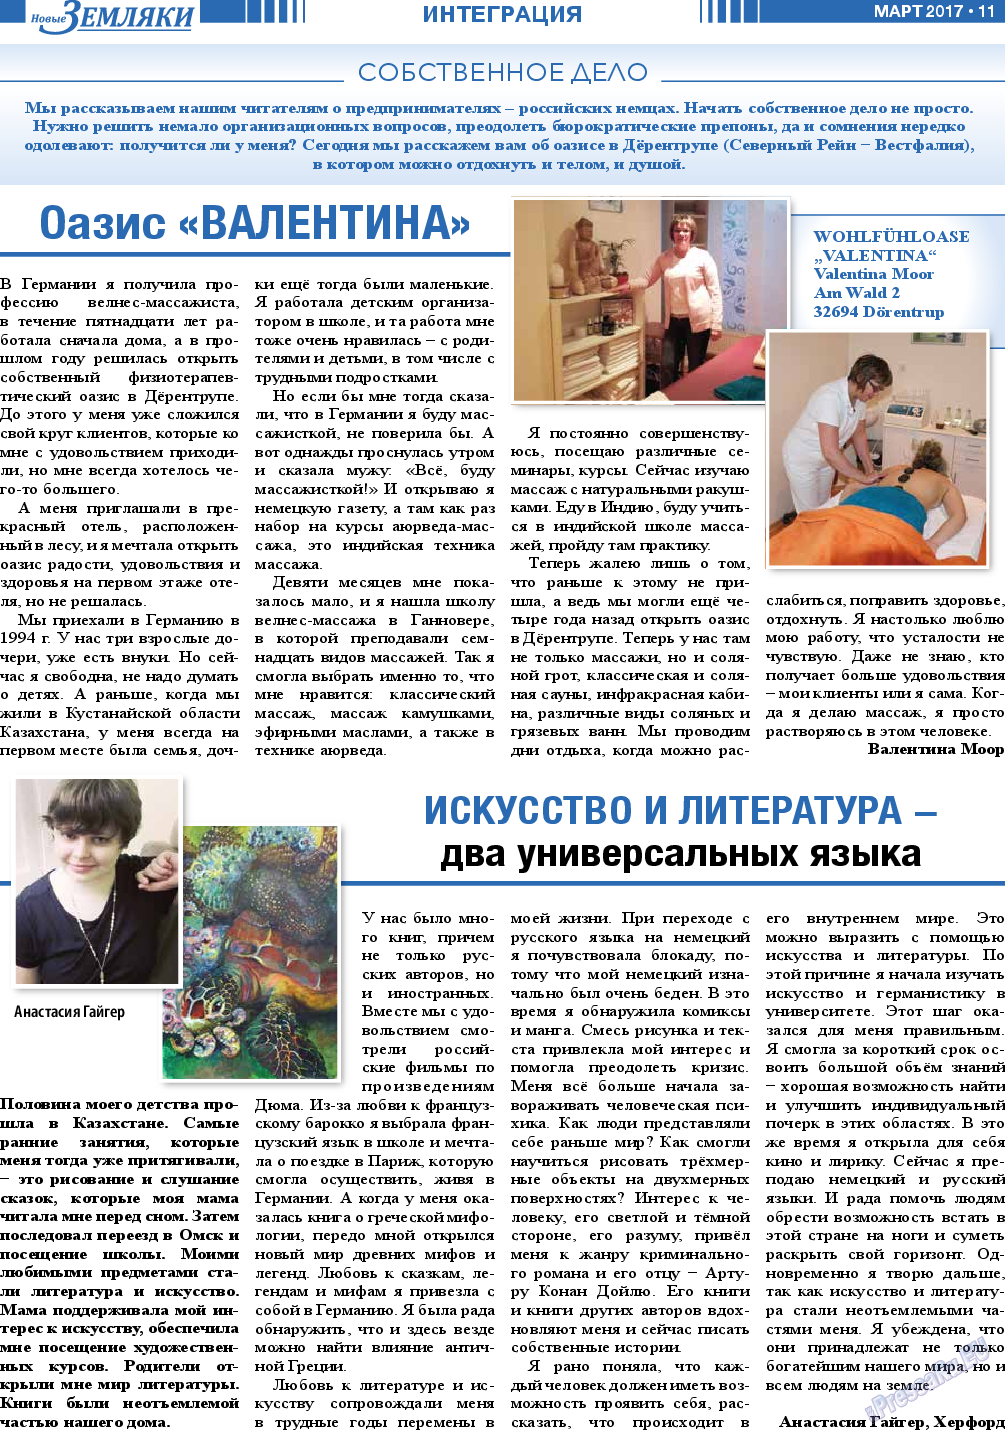 Новые Земляки, газета. 2017 №3 стр.11